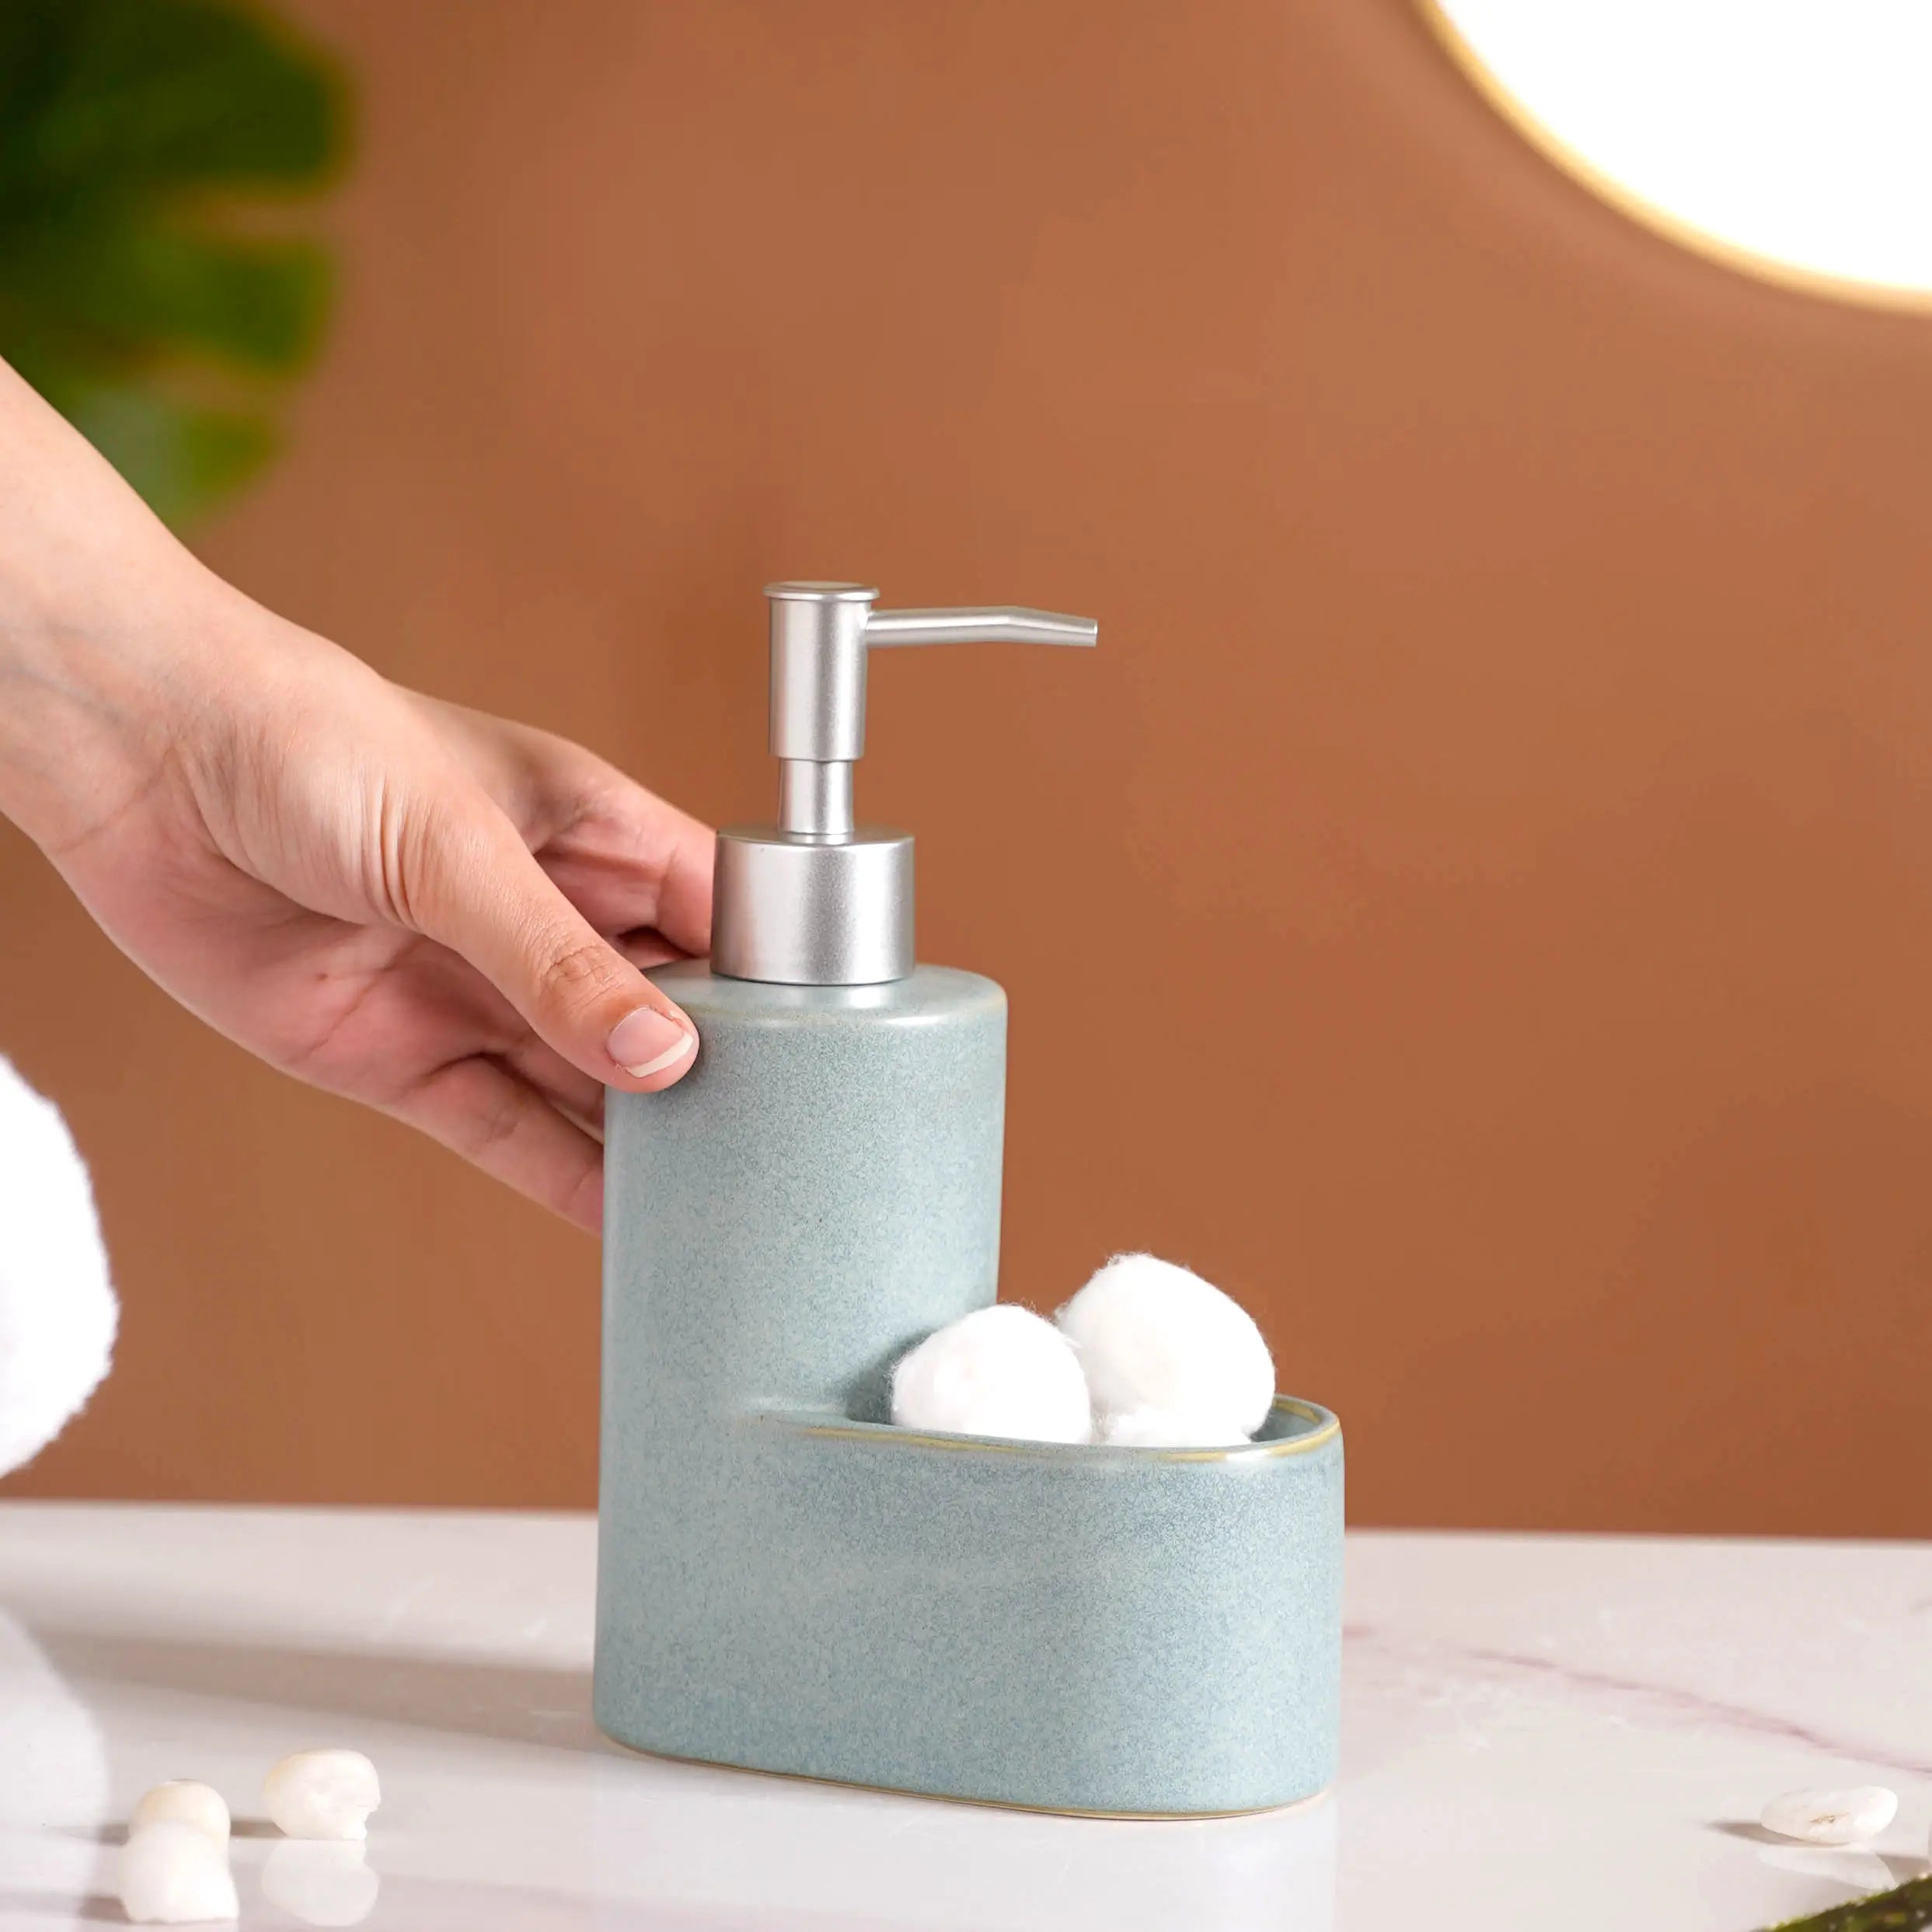 Dispenser - Buy Bathroom Soap Dispenser Online | Nestasia